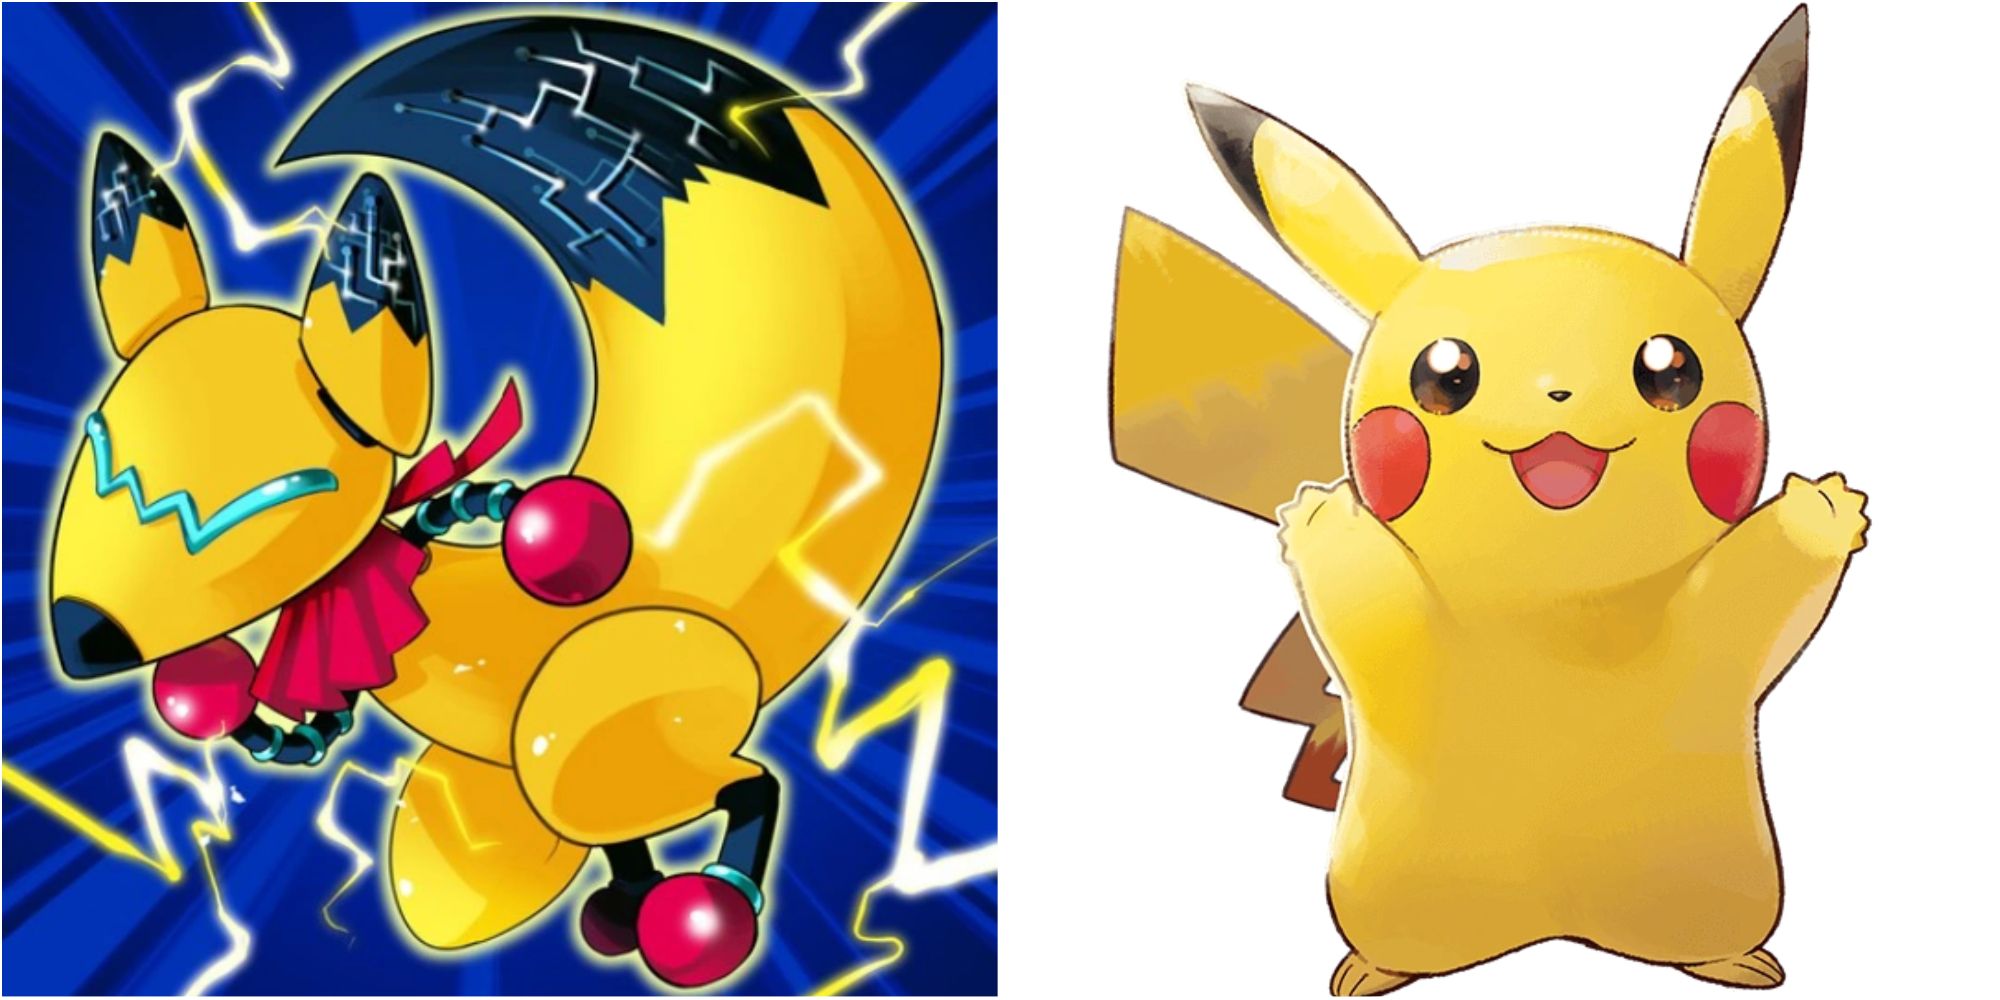 pokemon vs yugioh